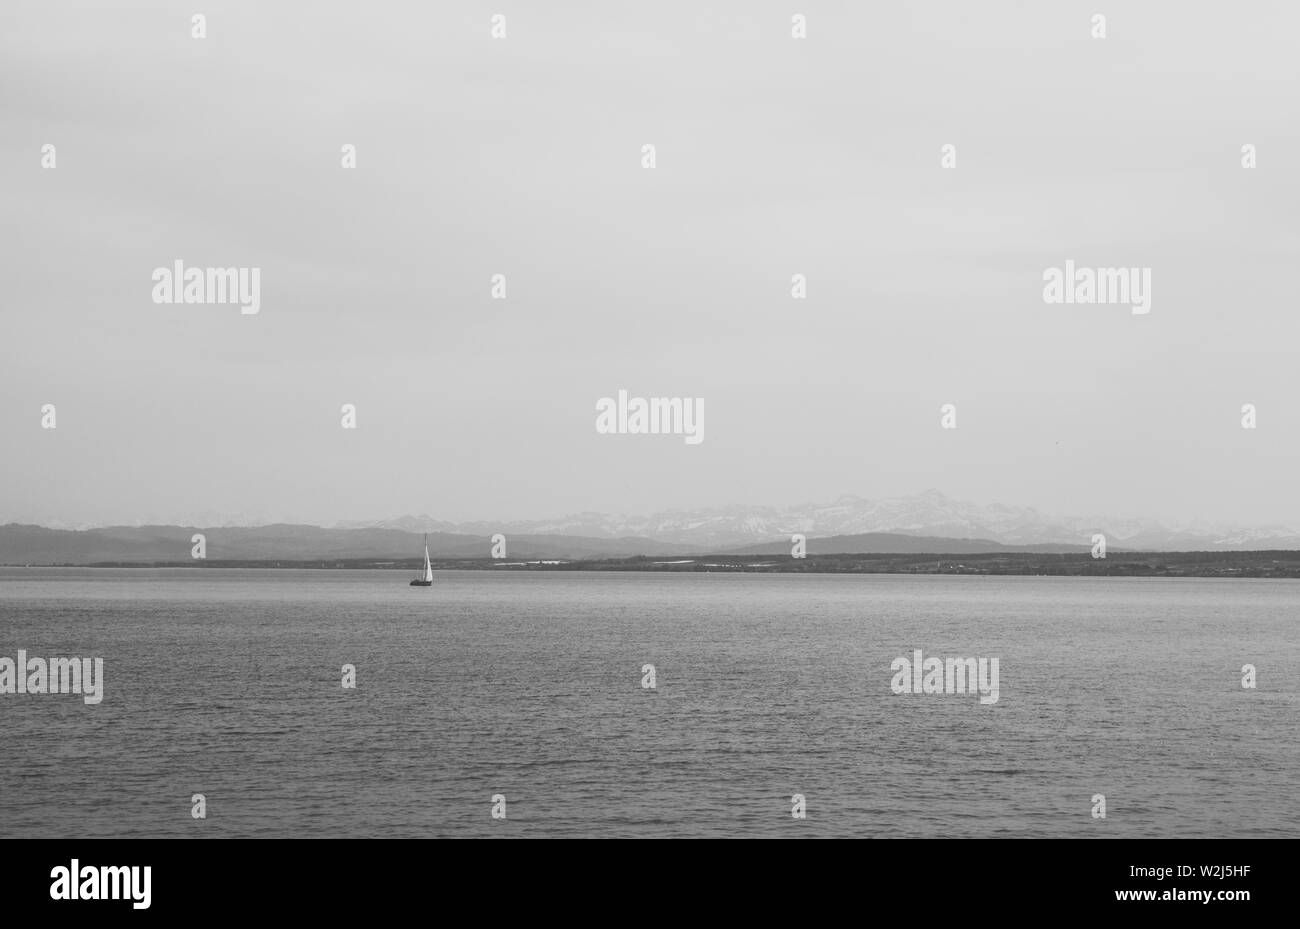 Ship on mountain background minimal grey Stock Photo